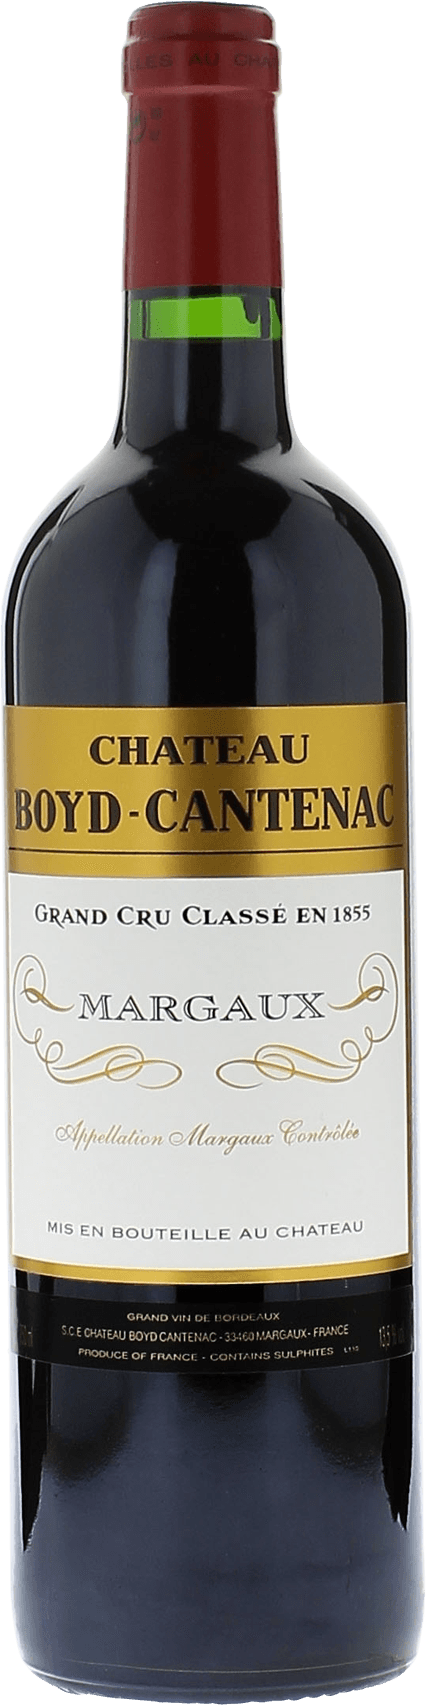 Boyd cantenac 2000 2me Grand cru class Margaux, Bordeaux rouge